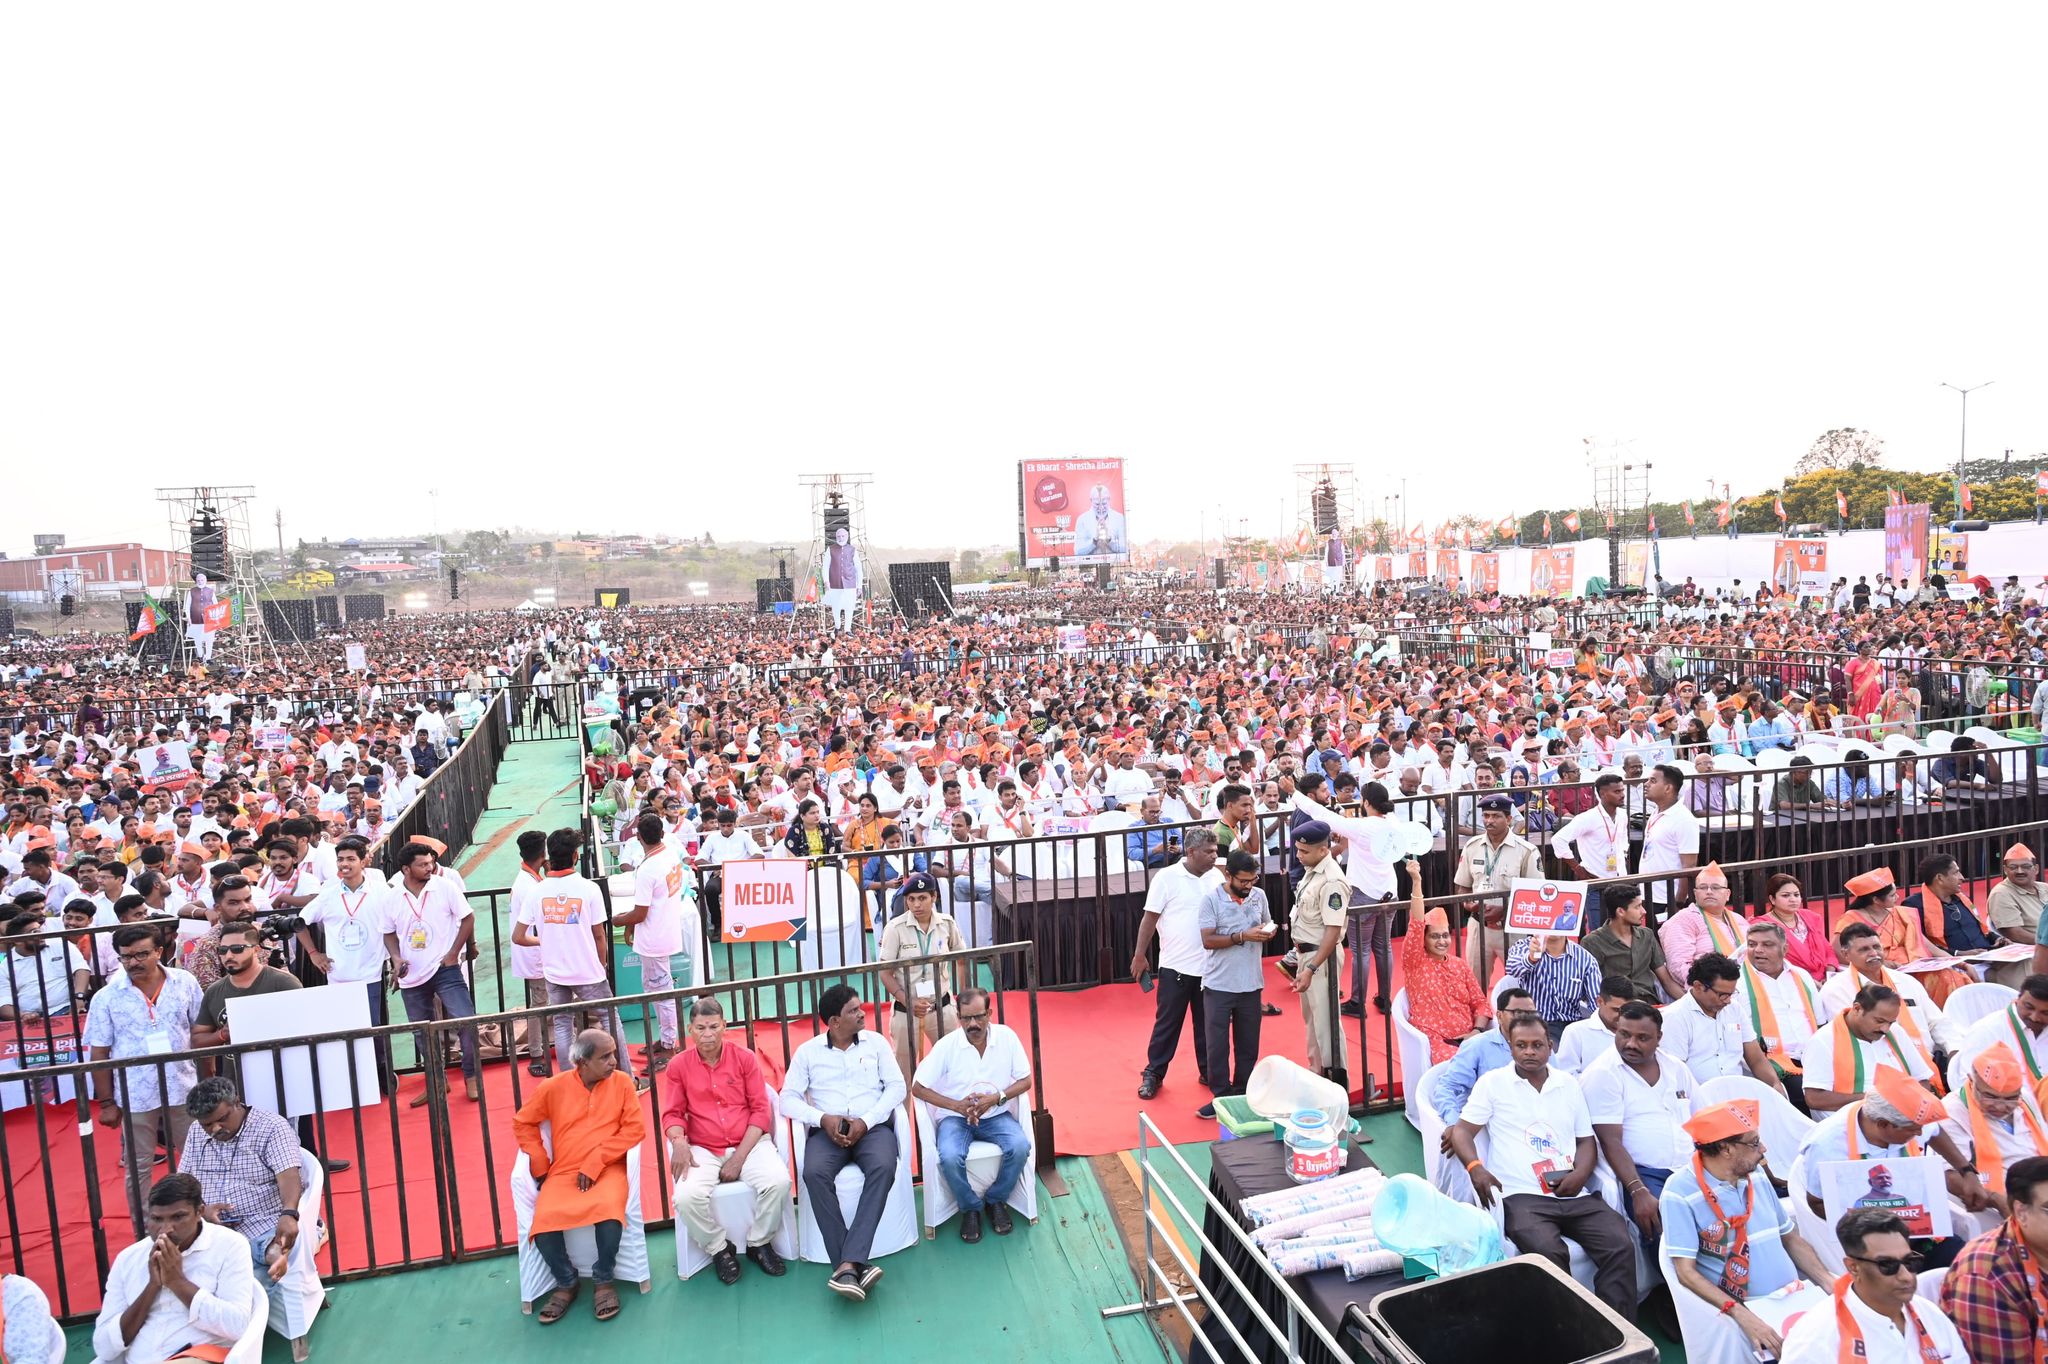 Indian PM Narendra Modi Attends in Public Gathering in South Goa